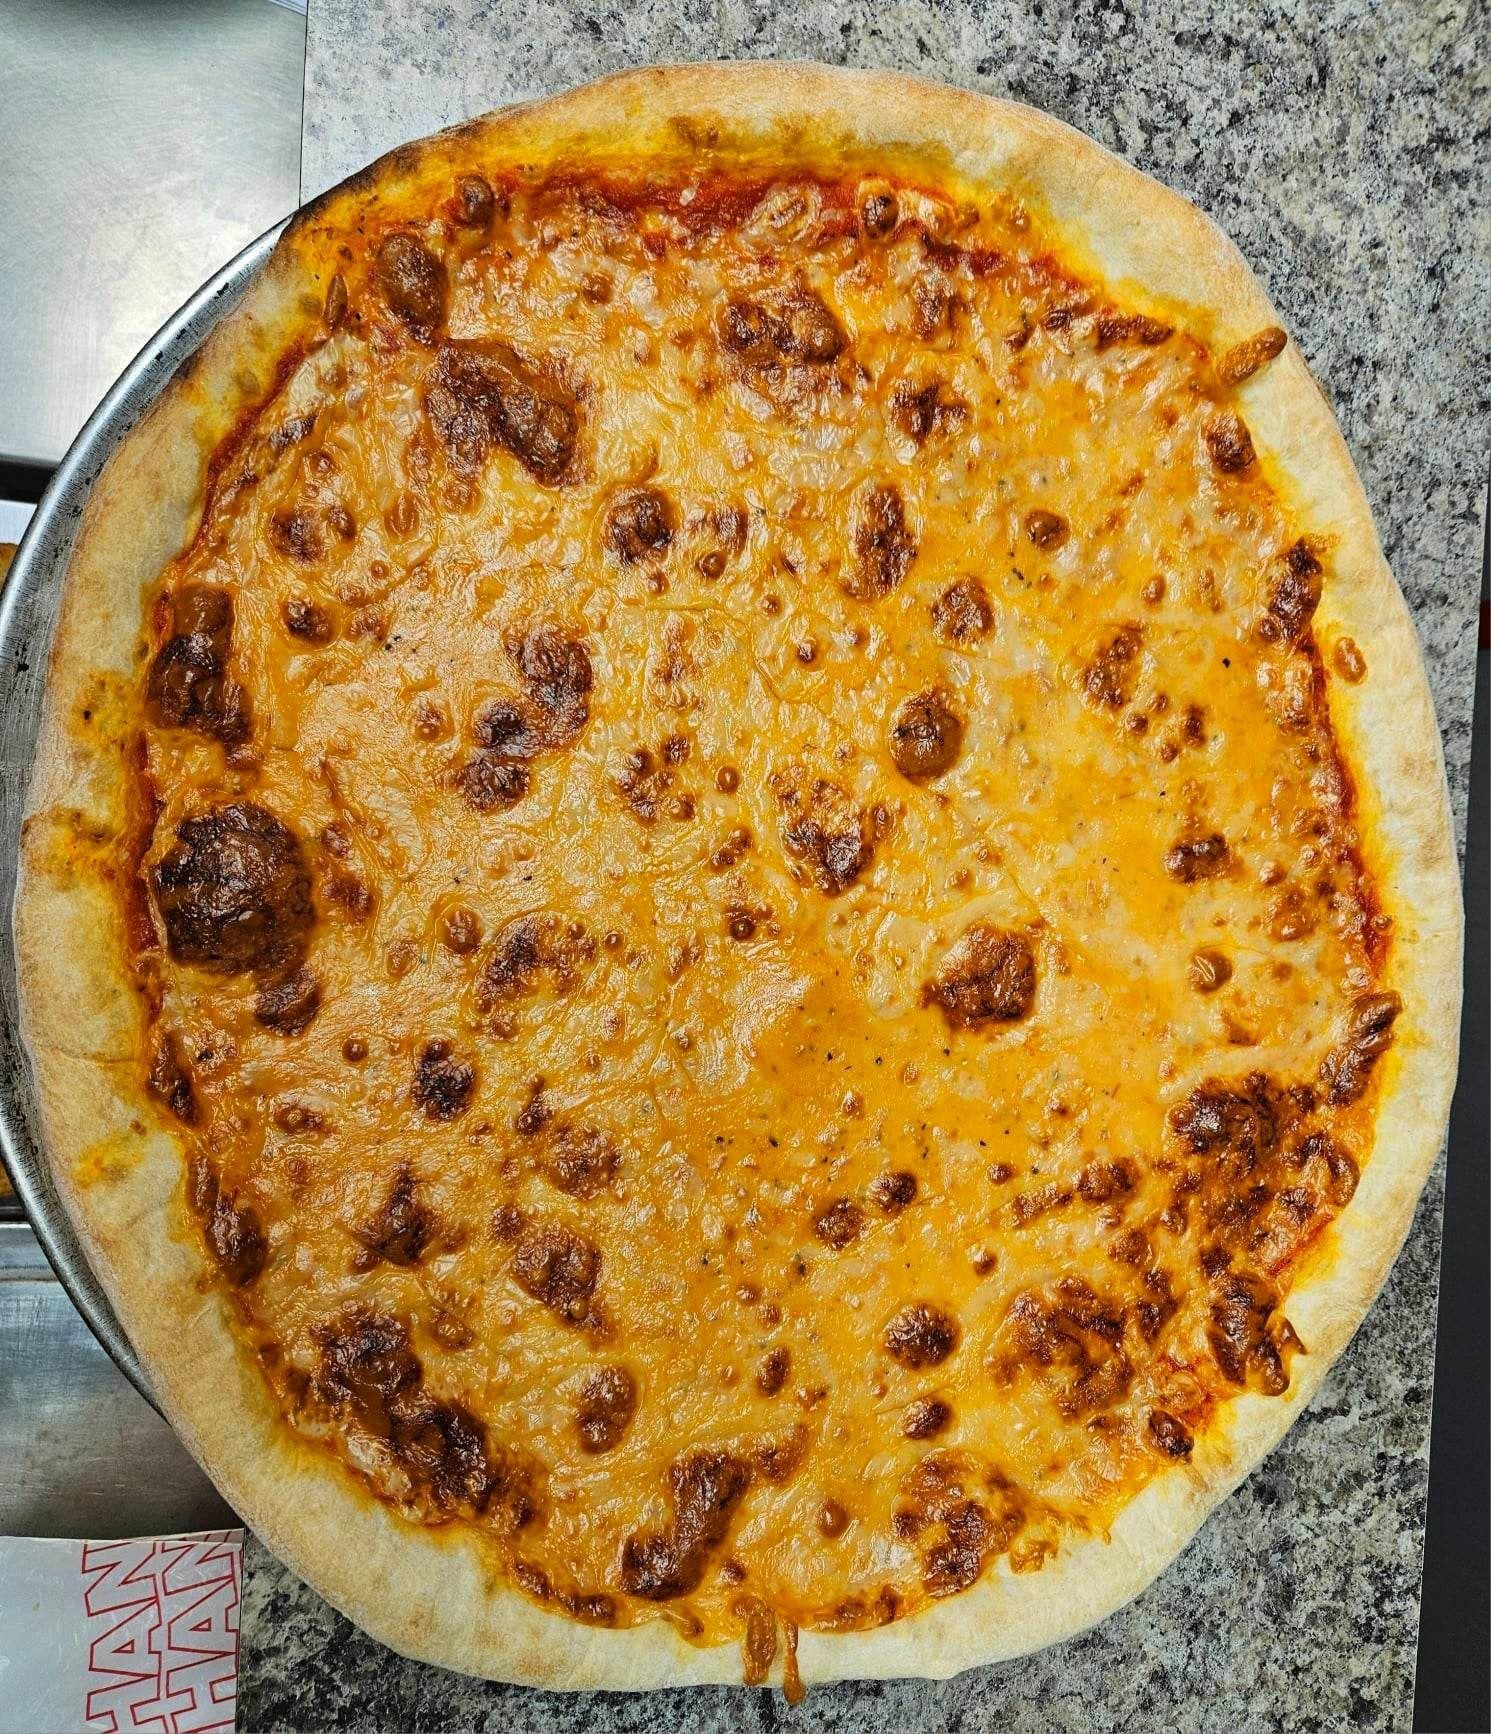 16" AMERICAN PIZZA